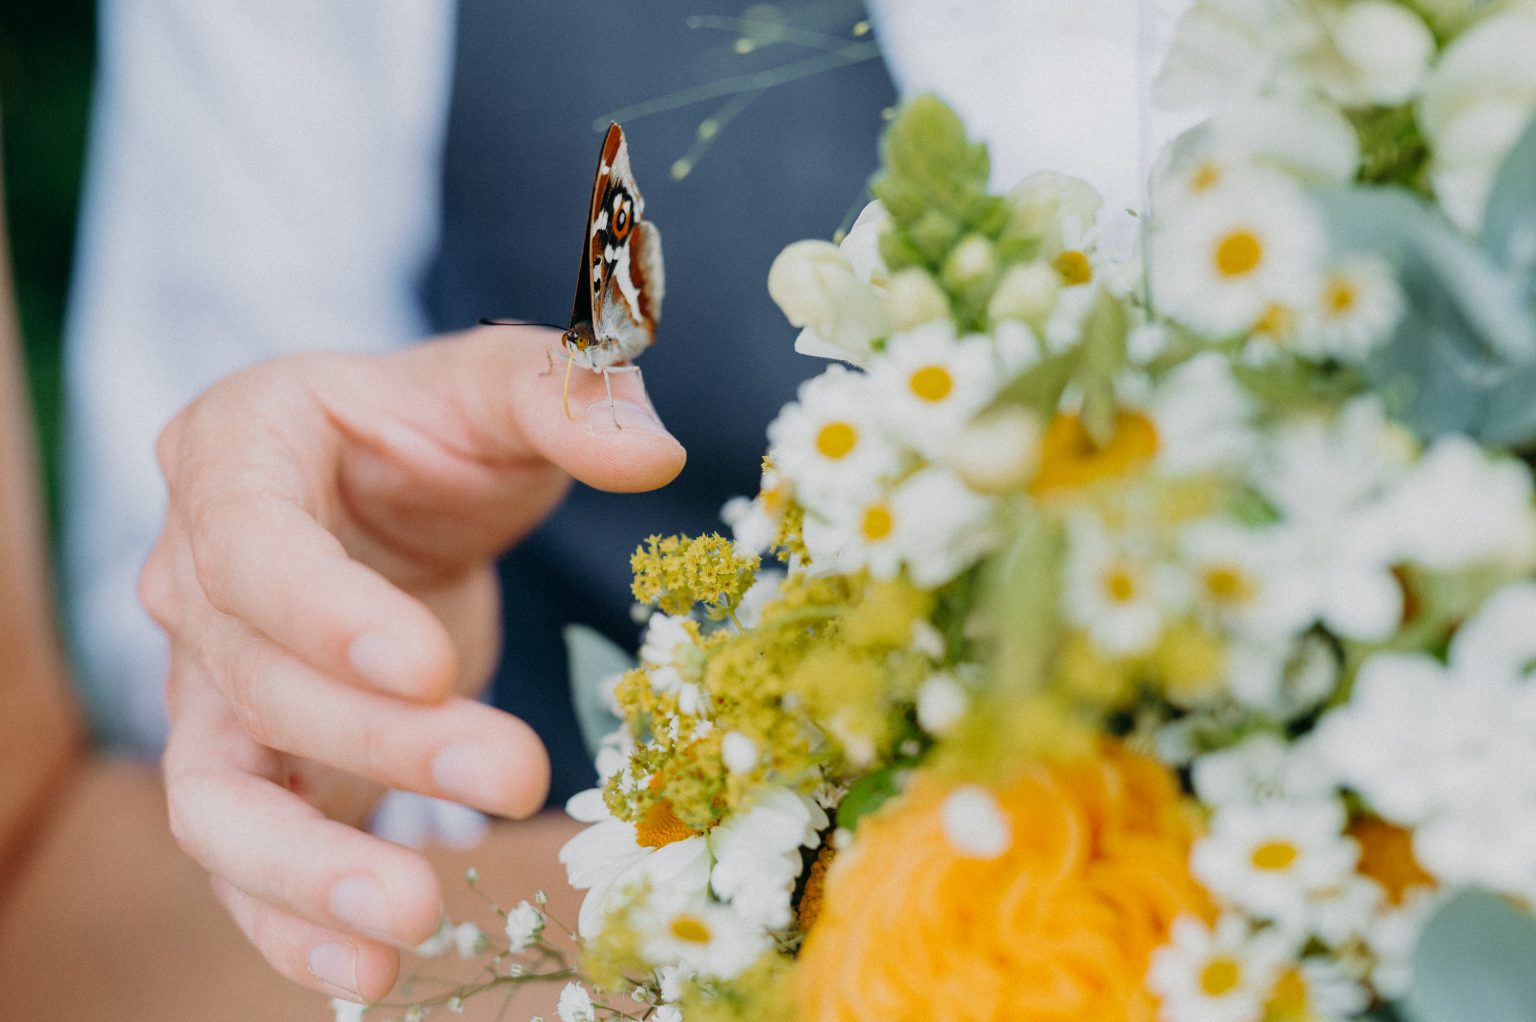 hochzeit fotografieren, wedding fotograf, Hochzeitsbilder Fotograf, Hochzeitsreportage